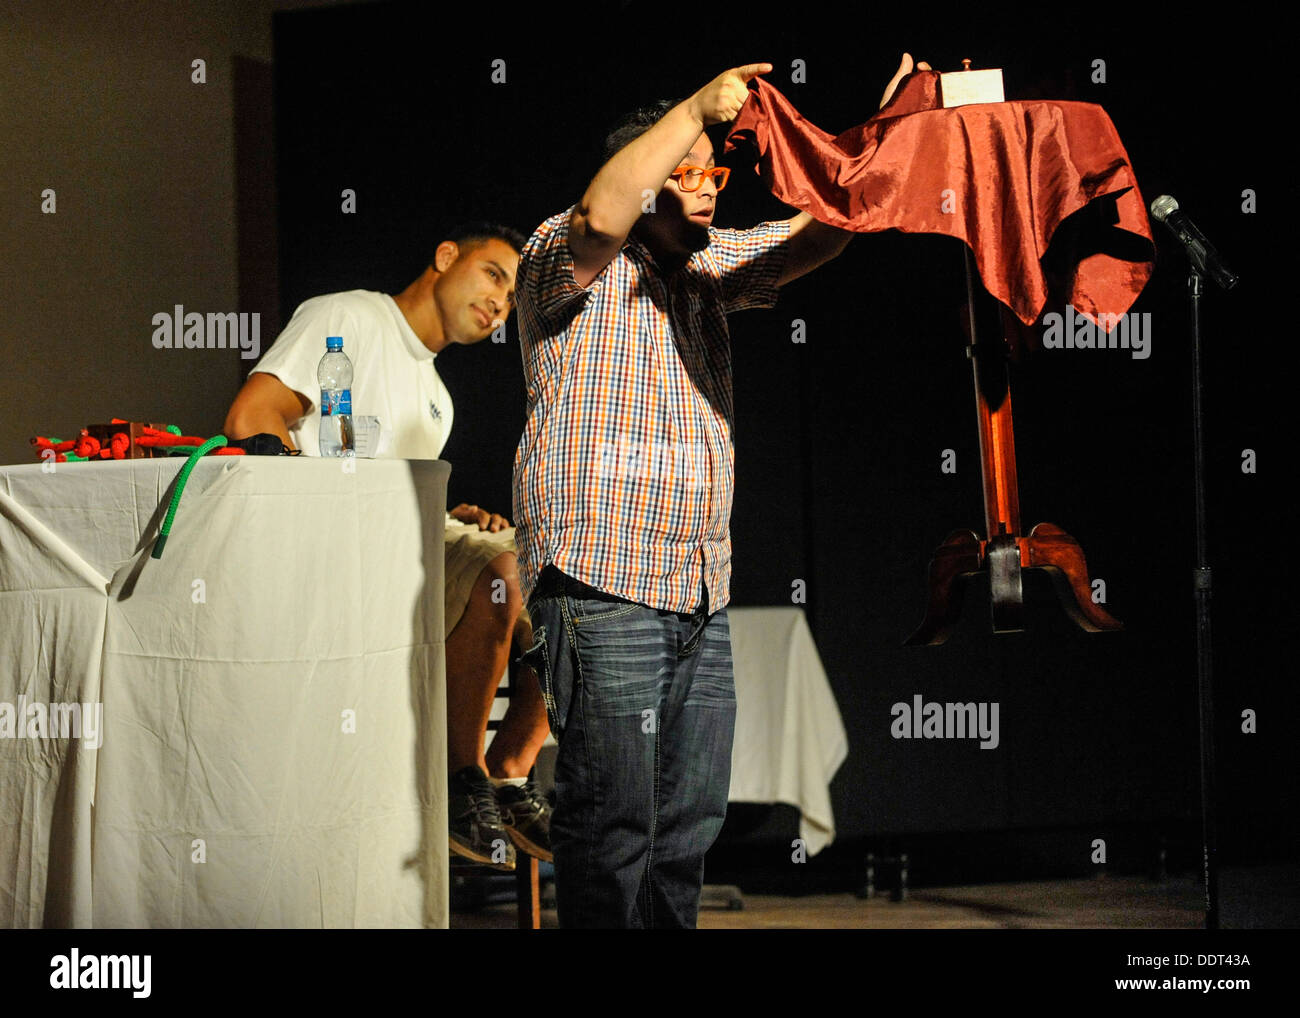 CAMP LEMONNIER, Gibuti (sett. 4, 2013) Comedic mago Wacko levita una tabella mentre un membro del pubblico guarda, durante il Foto Stock